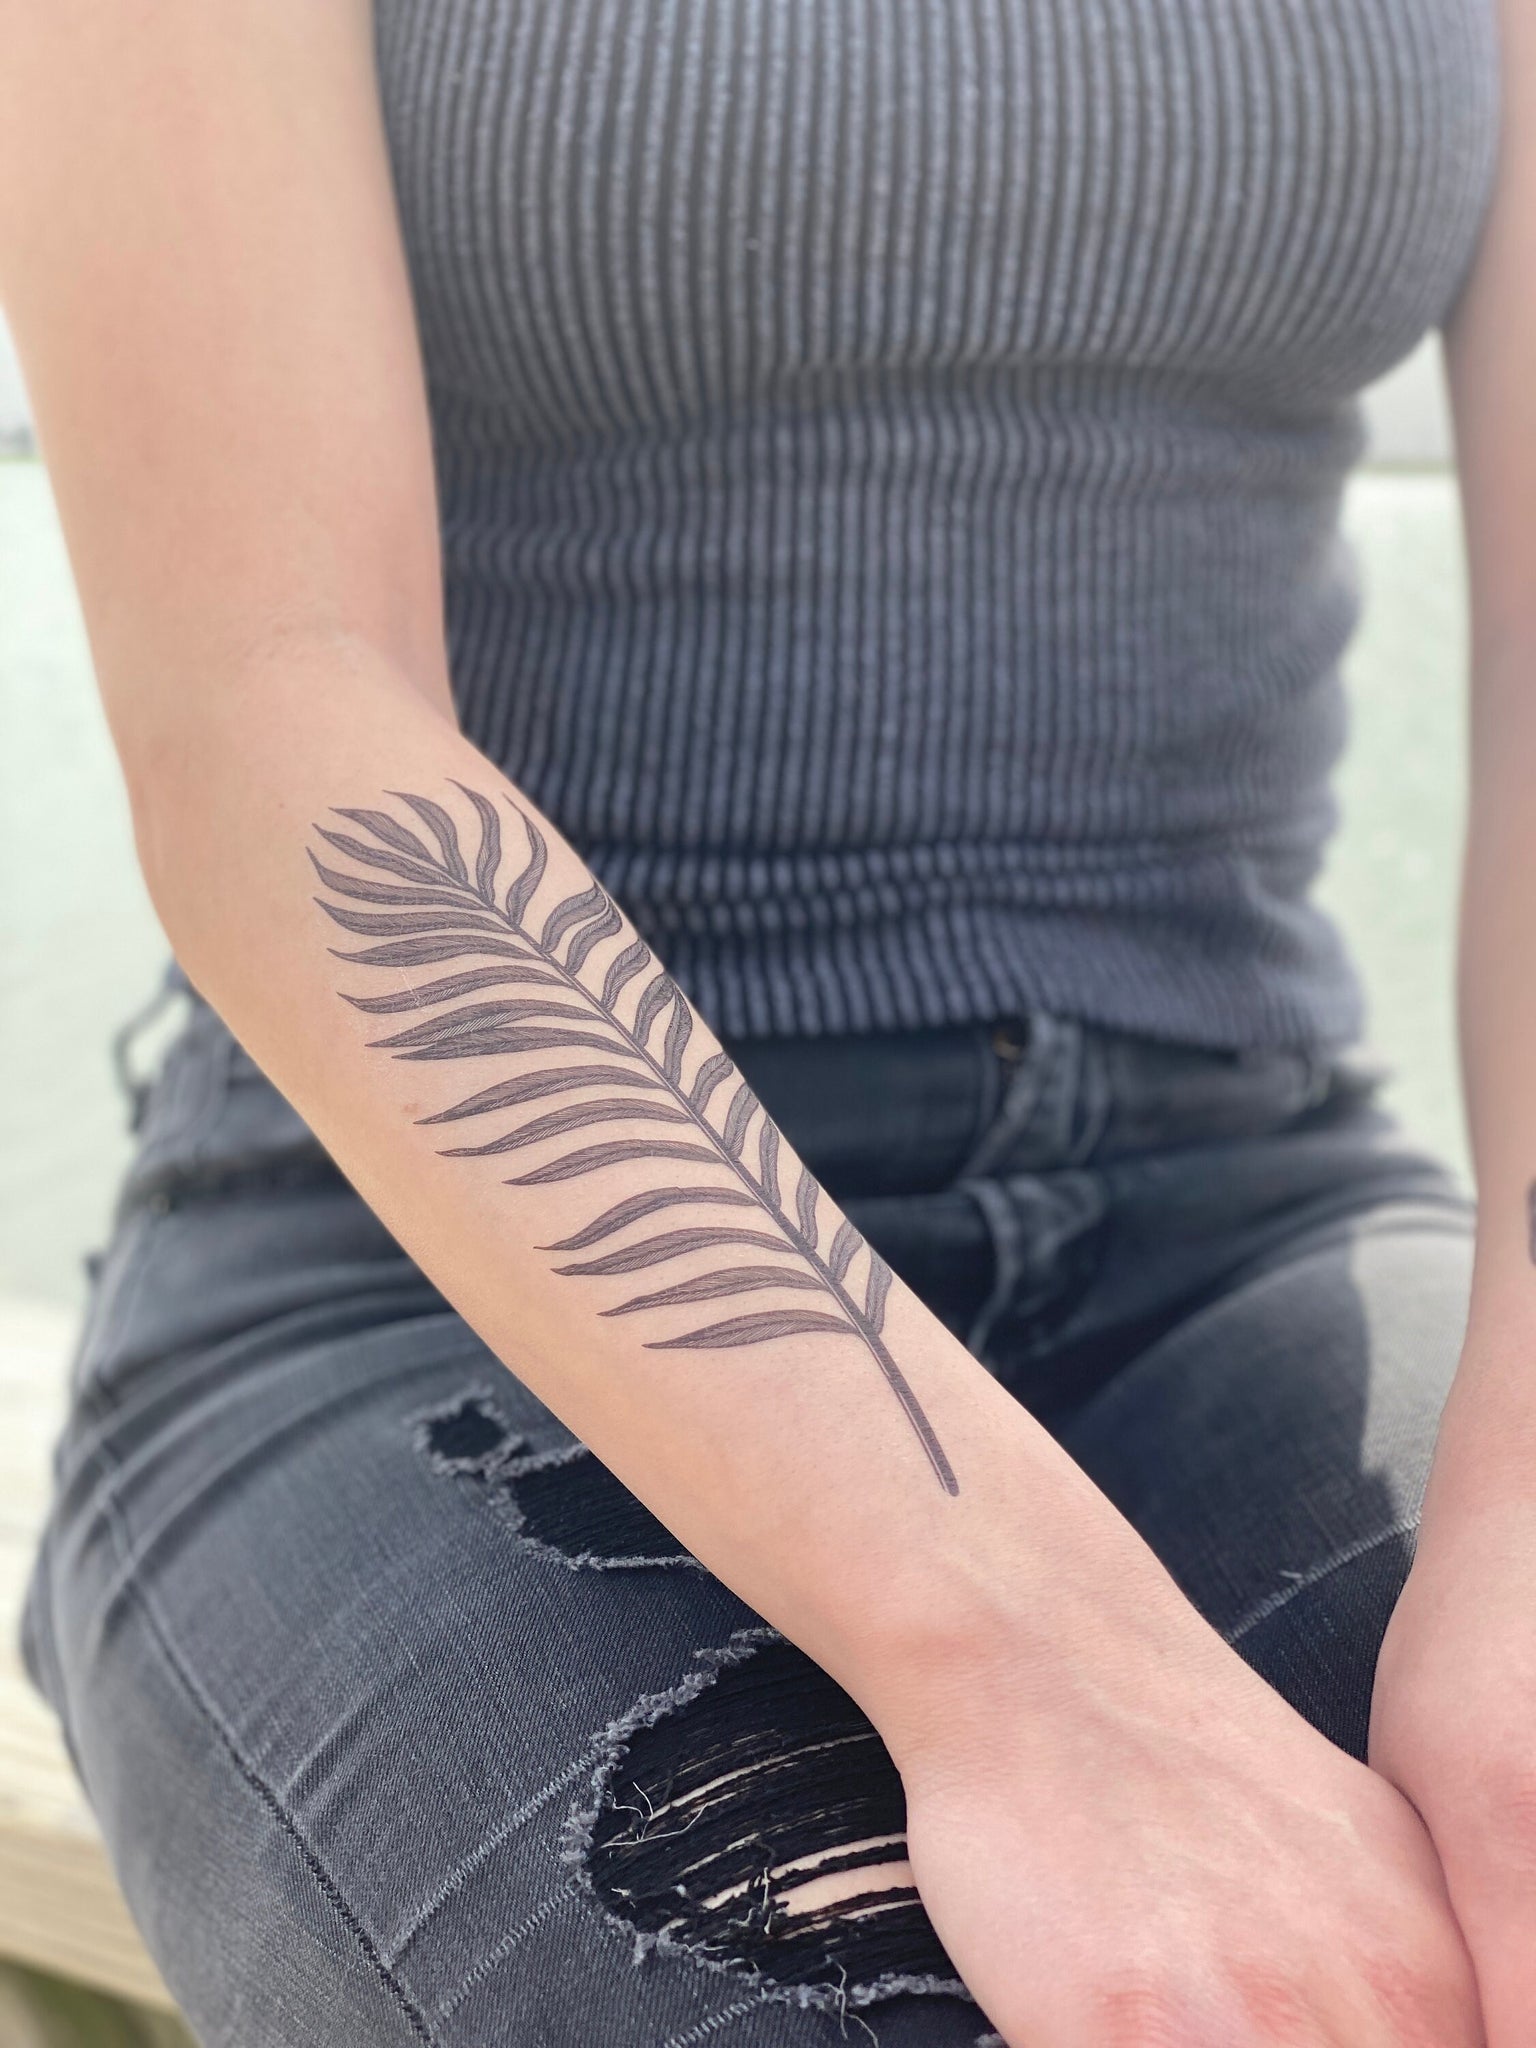 Tattoo uploaded by Delyone Escobar • Graphic fern leaf • Tattoodo